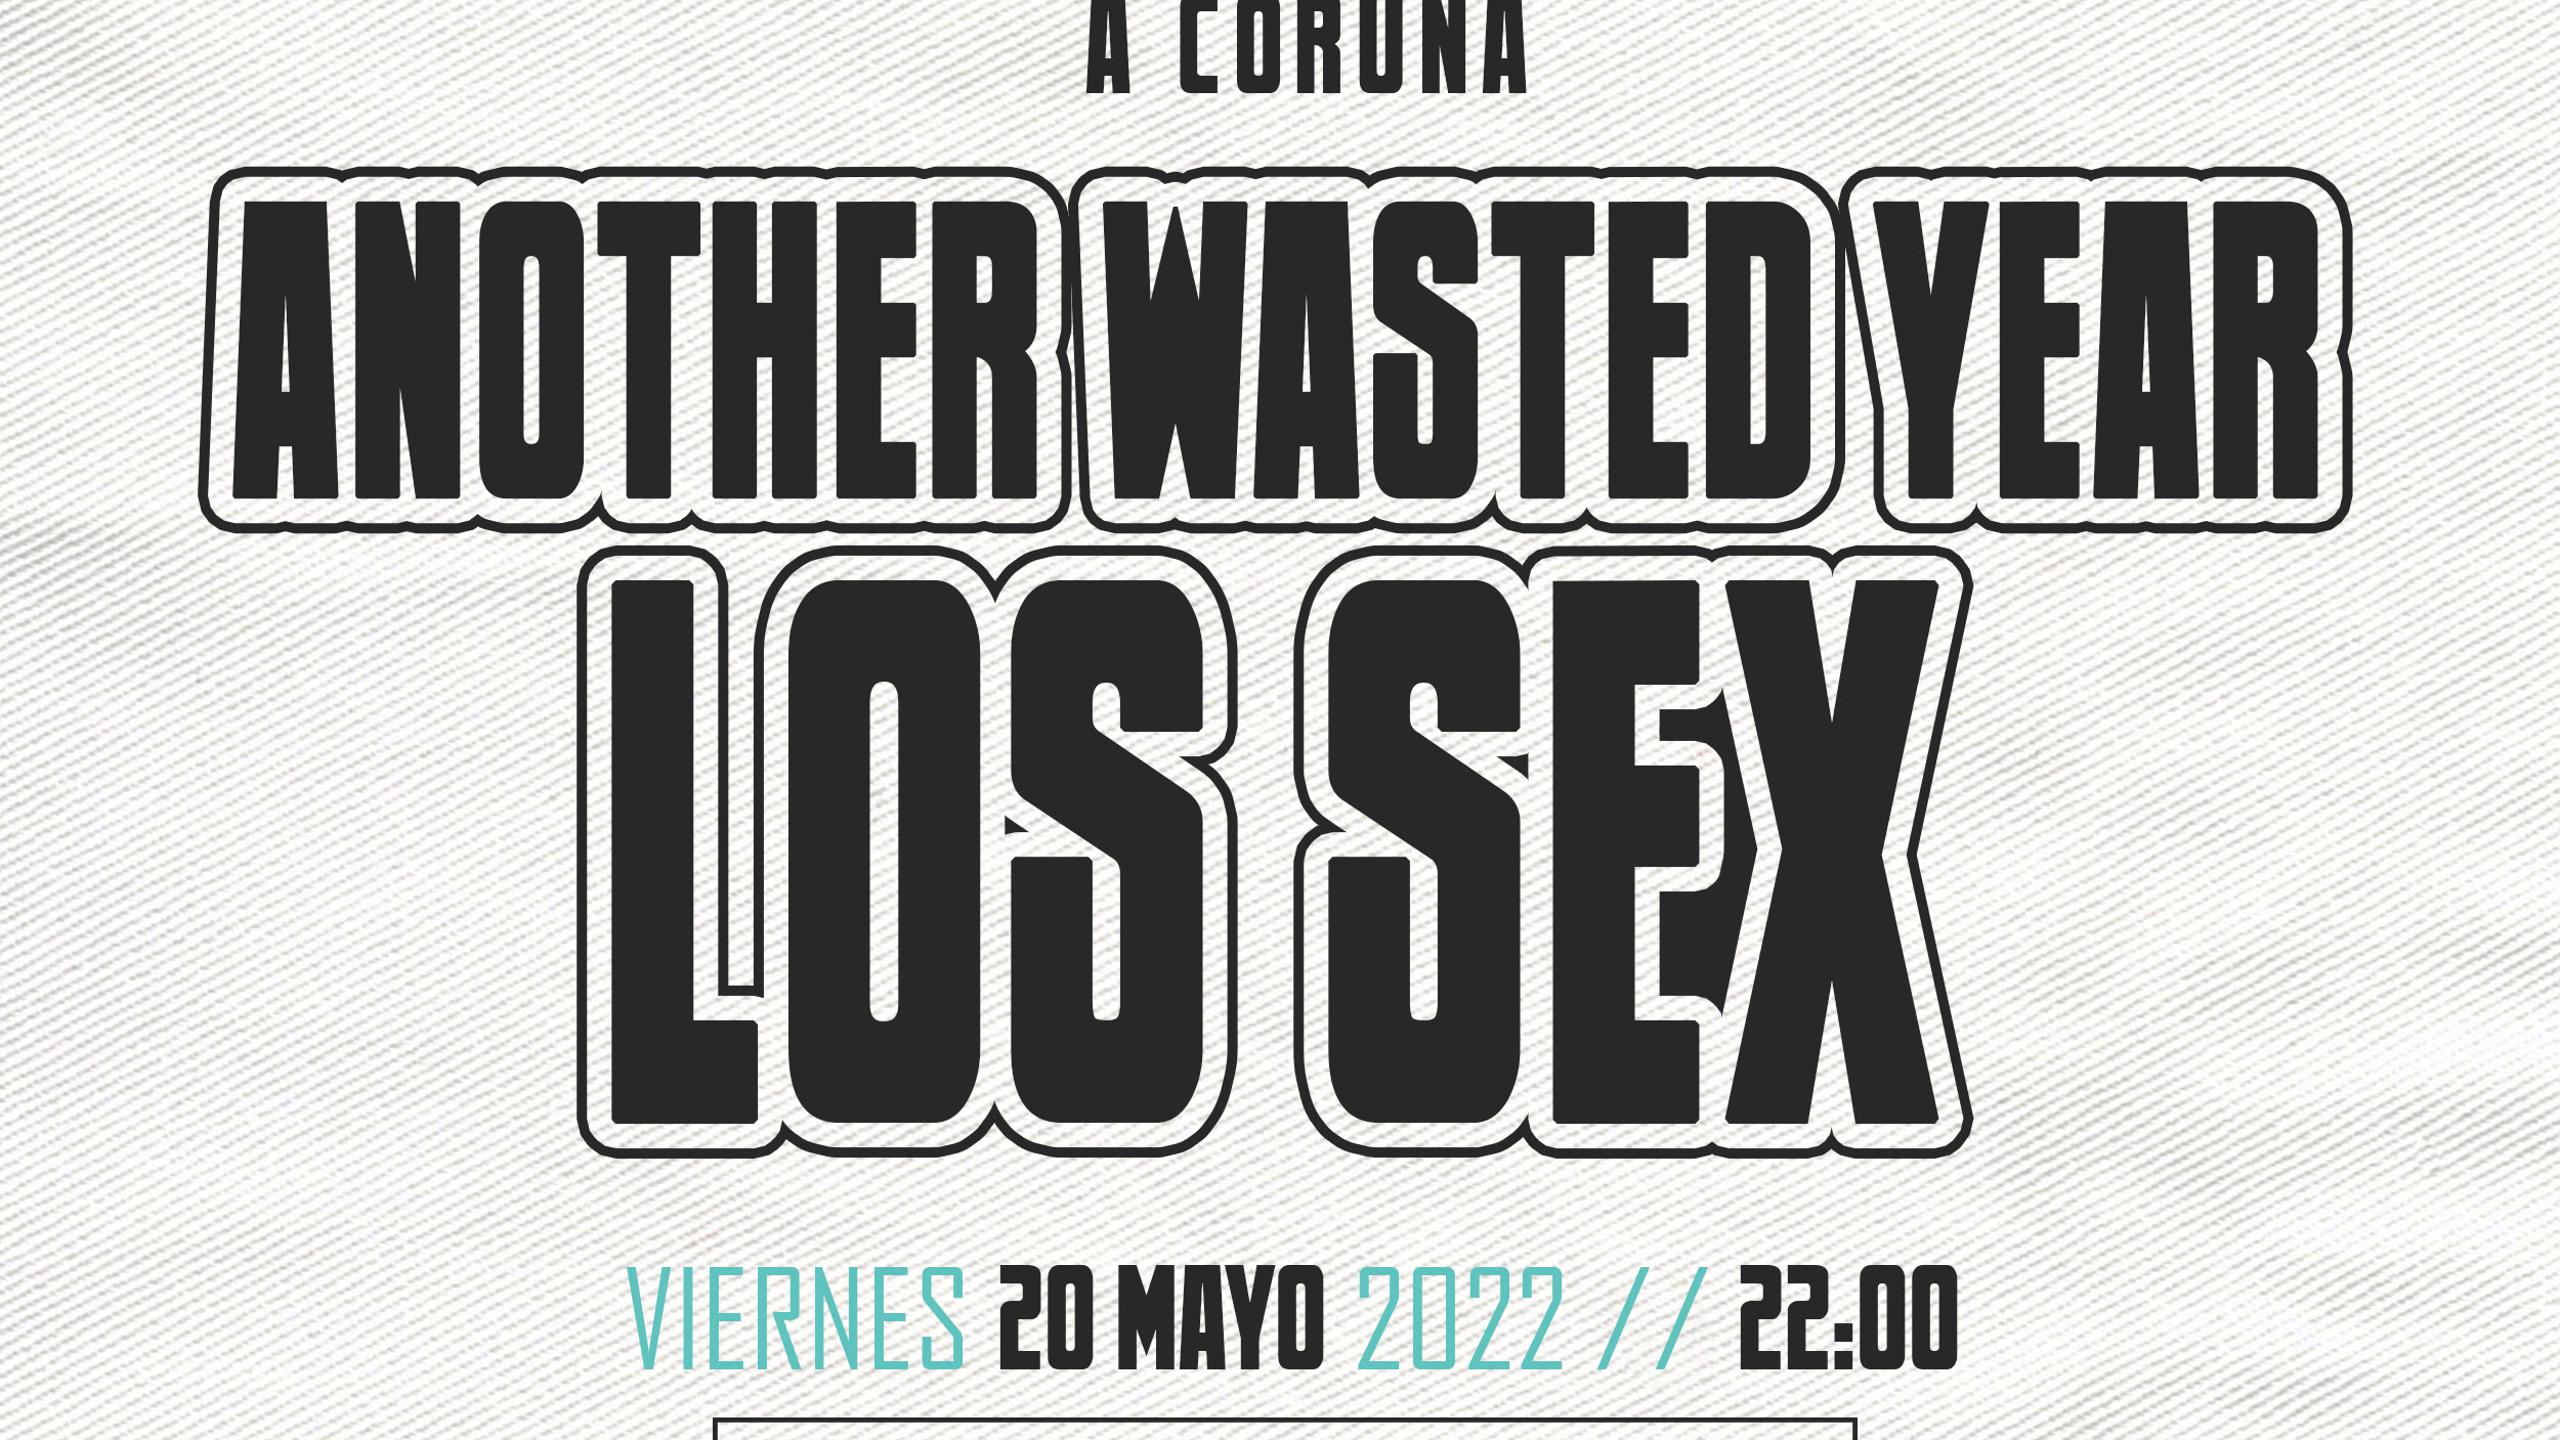 Los Sex Concert Tickets For Sala Mardi Gras A Coruña Friday 20 May